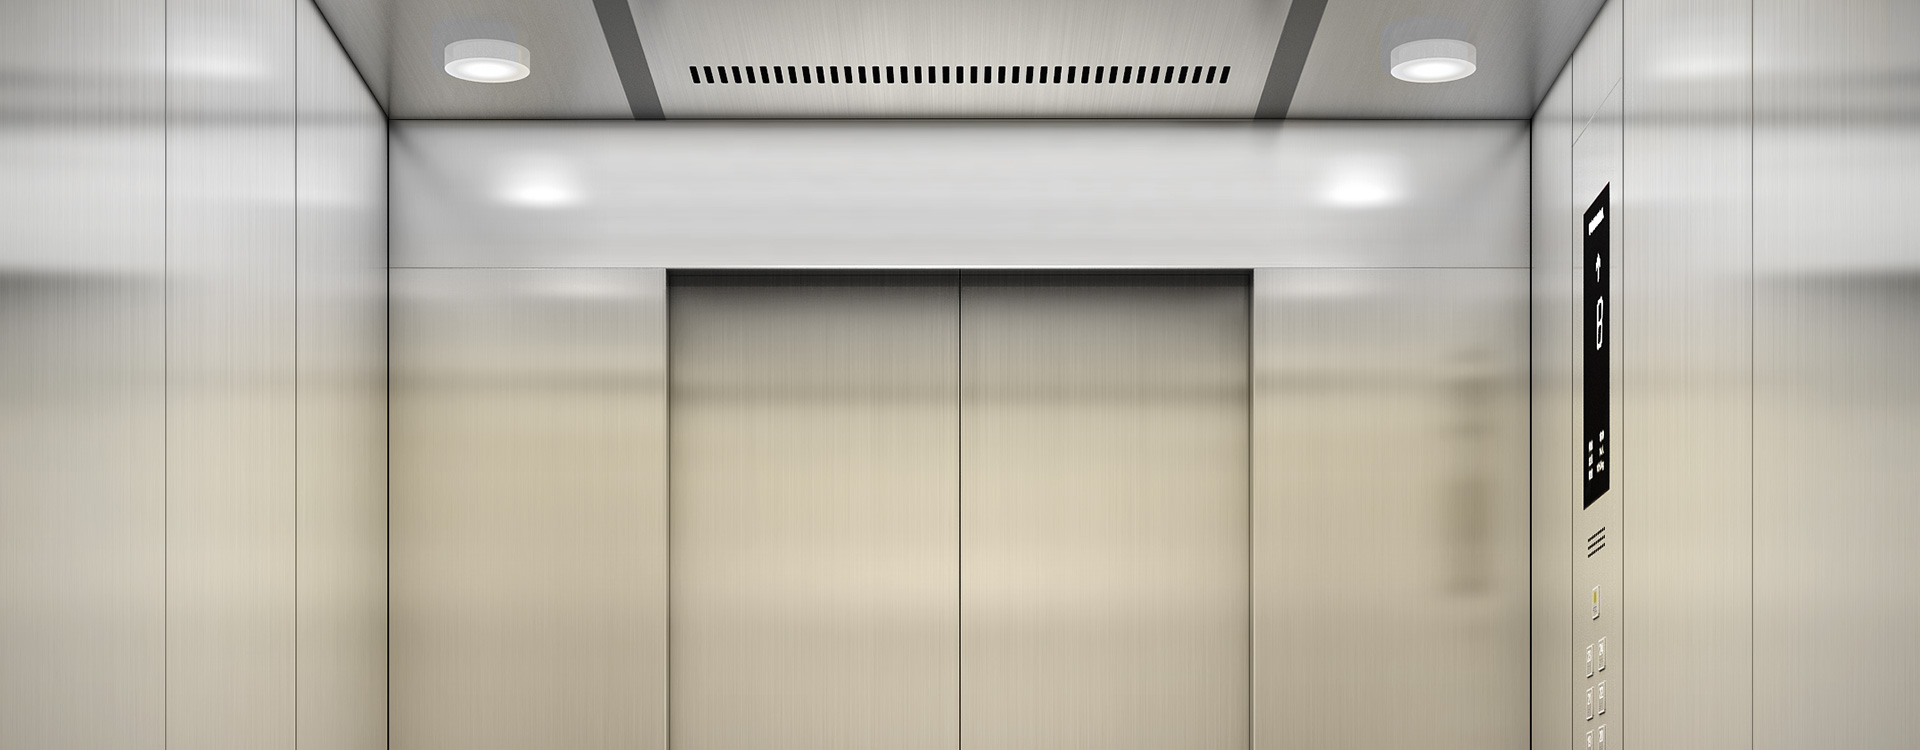 东芝小机房乘客电梯